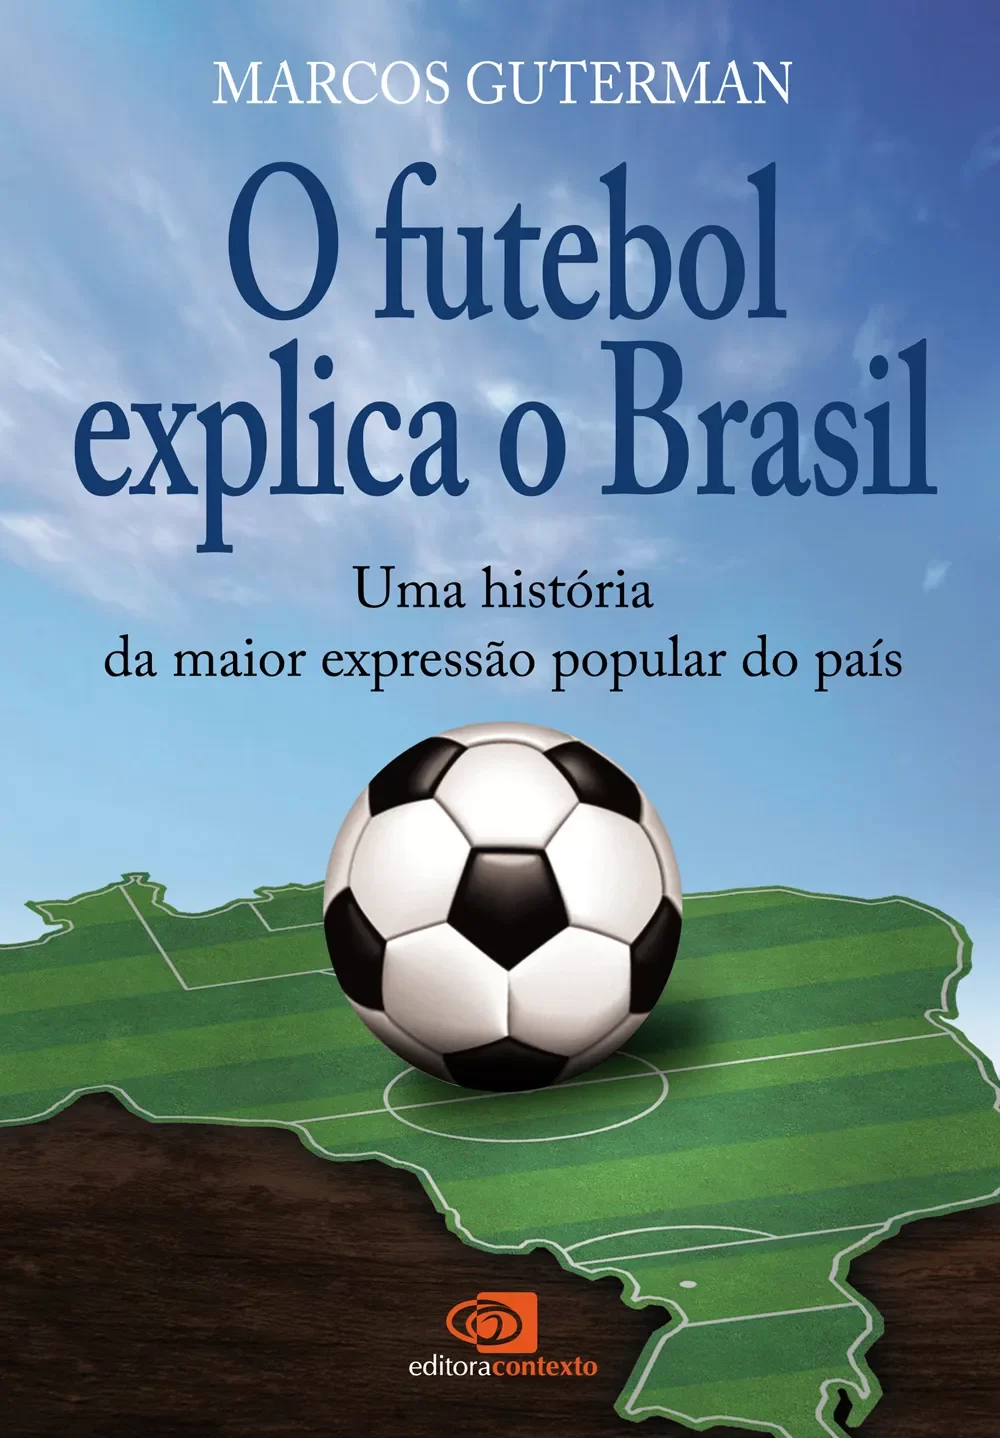 eBooks Kindle: O futebol como ele é: As histórias dos clubes  brasileiros, investigadas em seus meandros políticos e econômicos, explicam  como e por que se ganha (e se perde) neste jogo